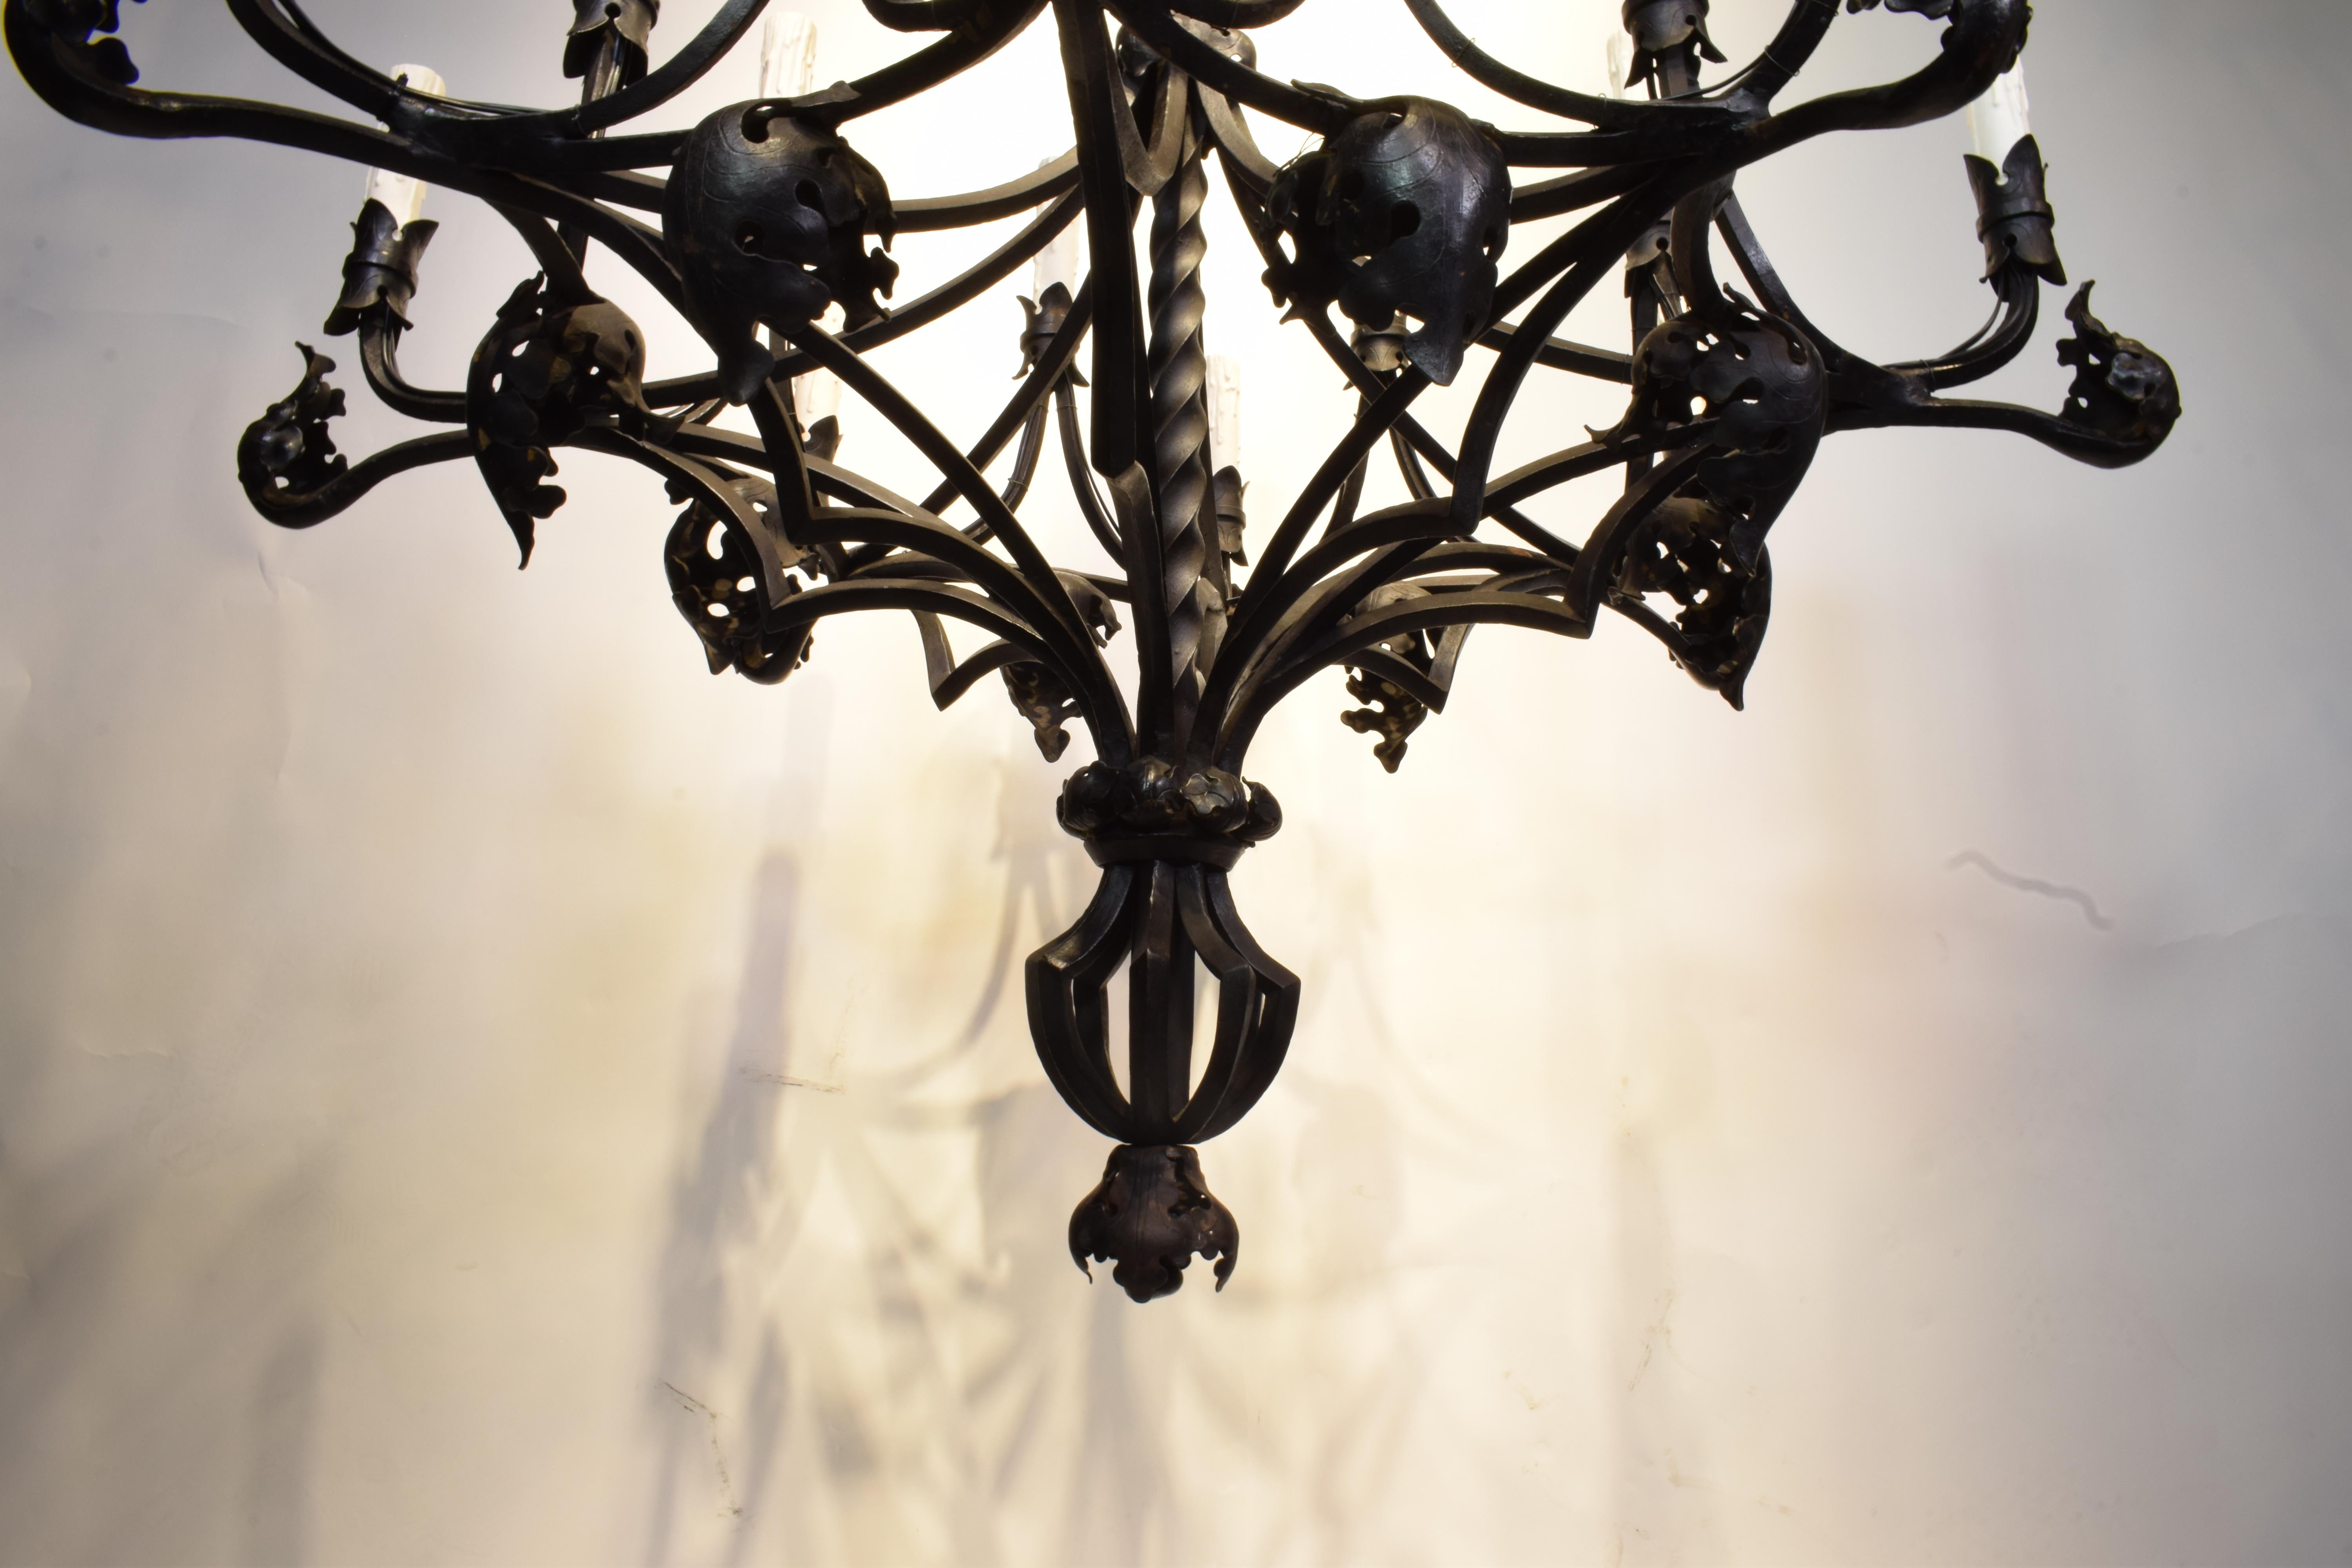 Ein sehr feiner, handgehämmerter Eisenkronleuchter im gotischen Stil. Außergewöhnliche Eisenarbeiten. 16 Lichter. Frankreich, um 1890. 
Abmessungen: Höhe 51